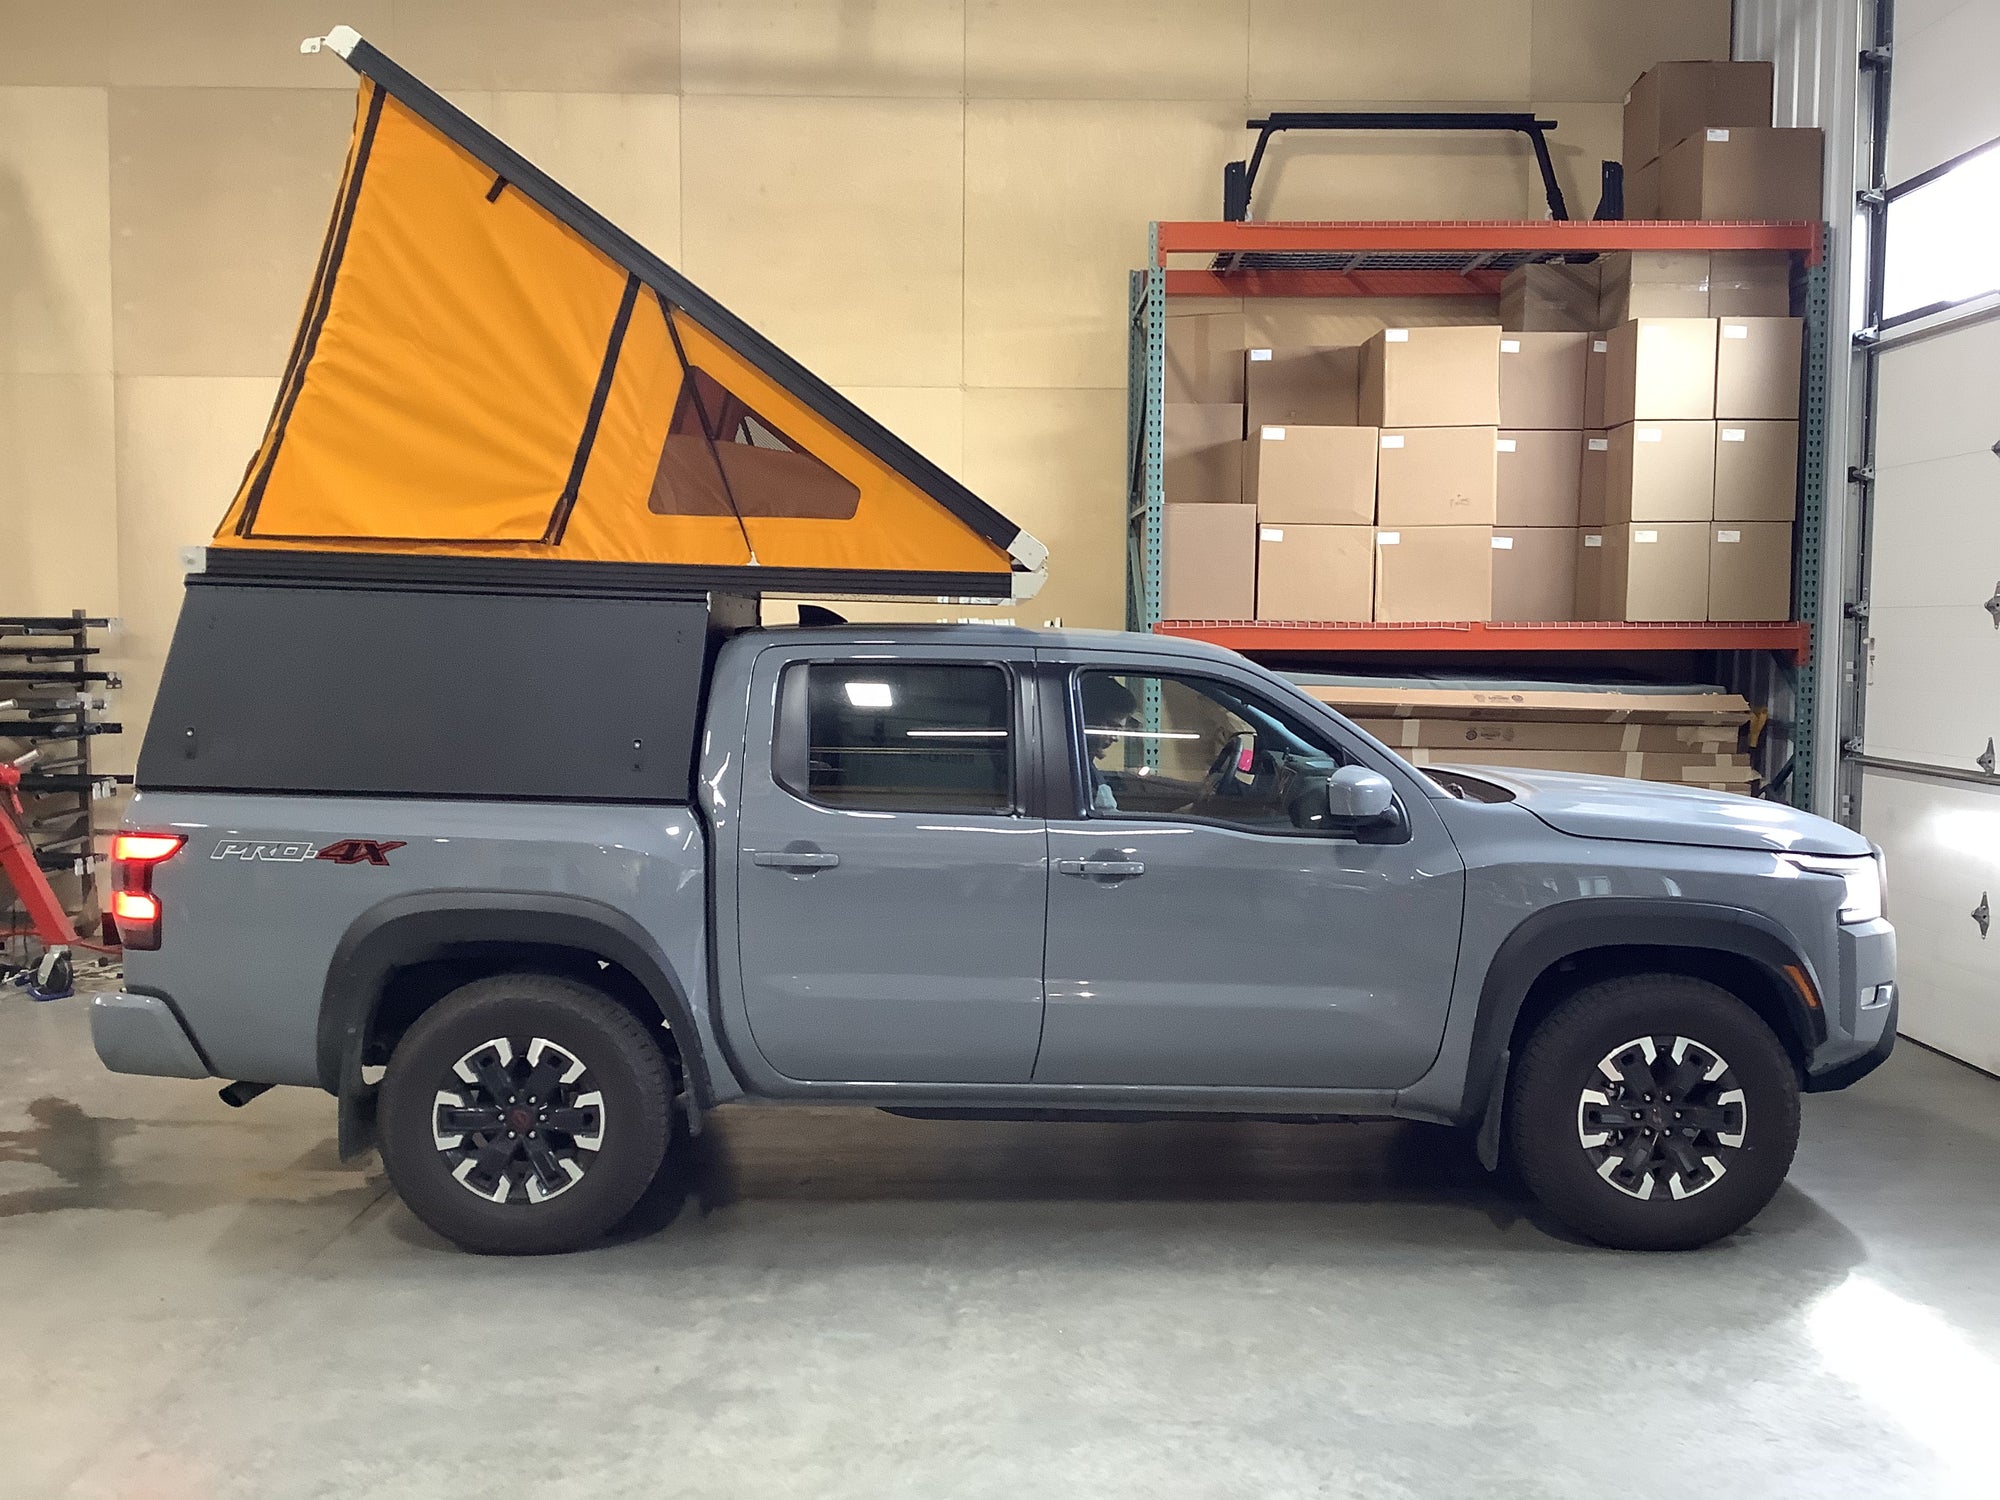 2022 Nissan Frontier Camper - Build #3528